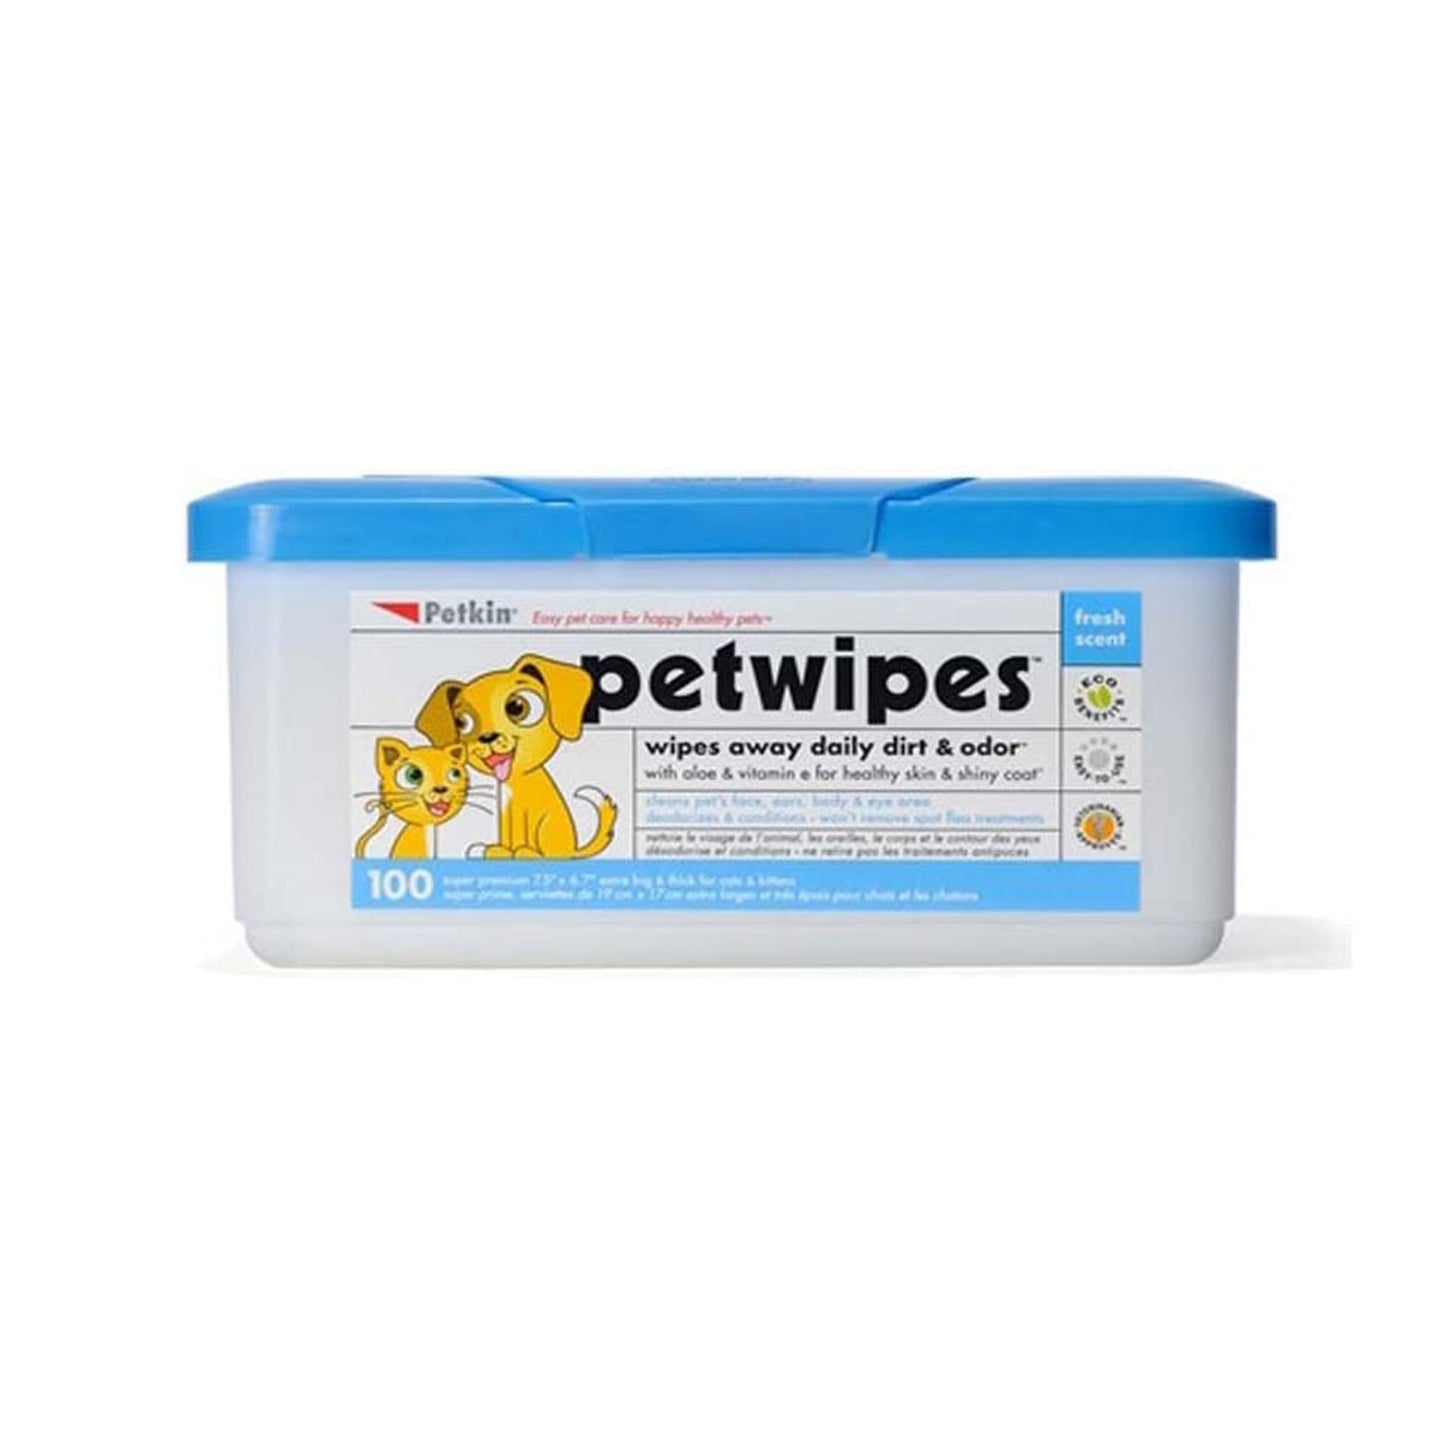 Petkin Petwipes 100 count Dog Hygiene & Cat Hygiene Wipes